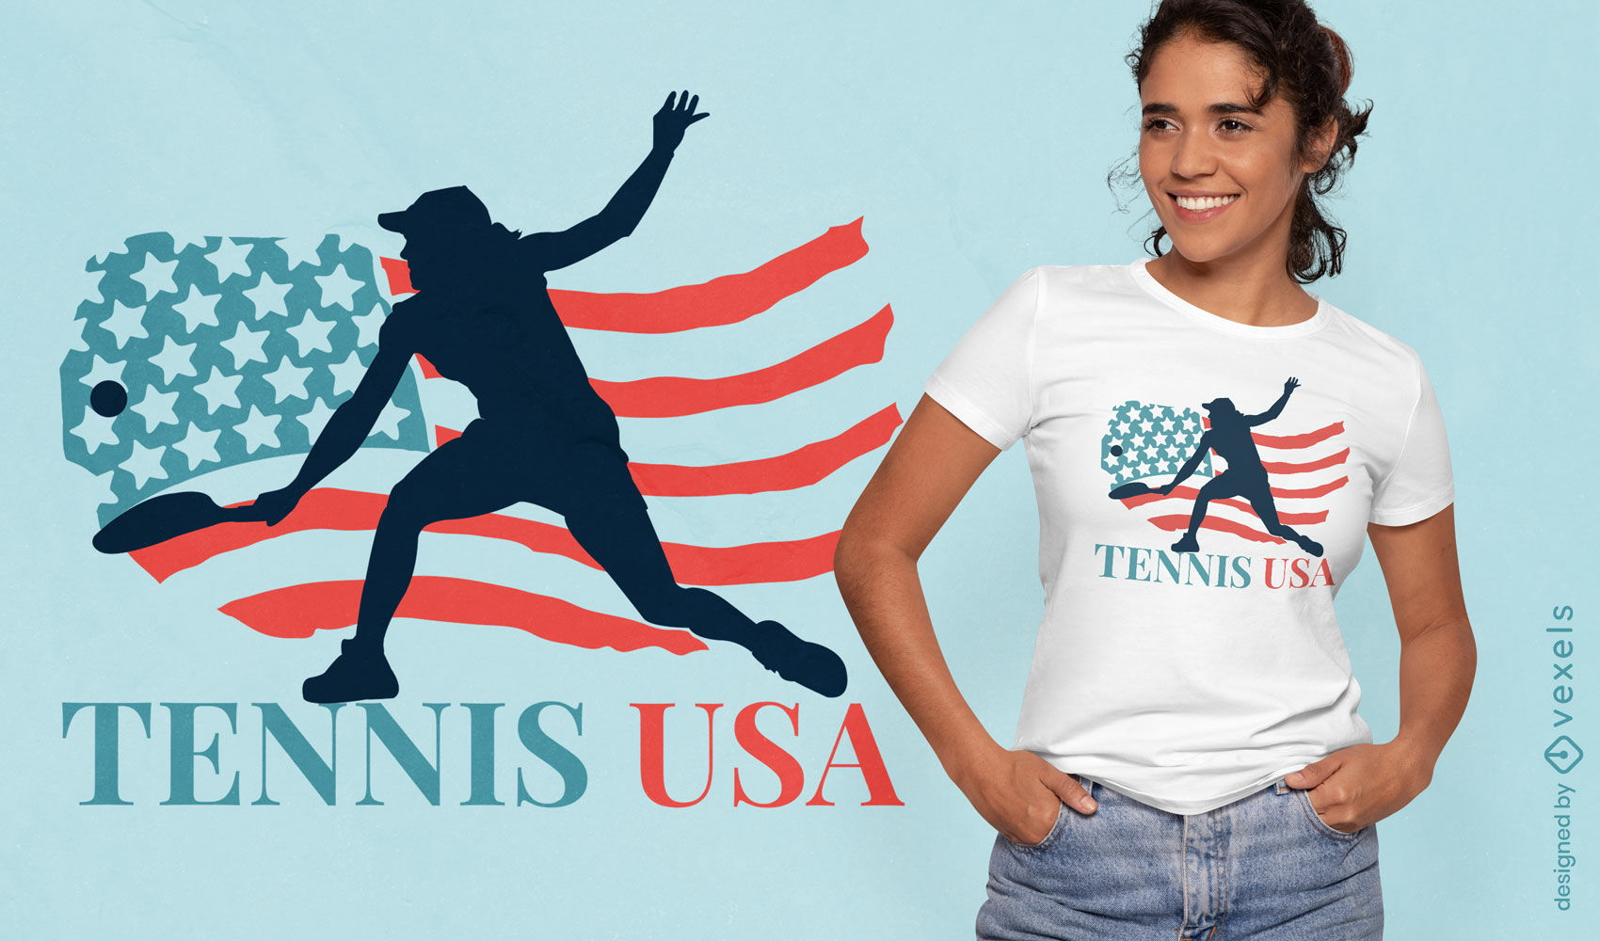 Tennis USA t-shirt design